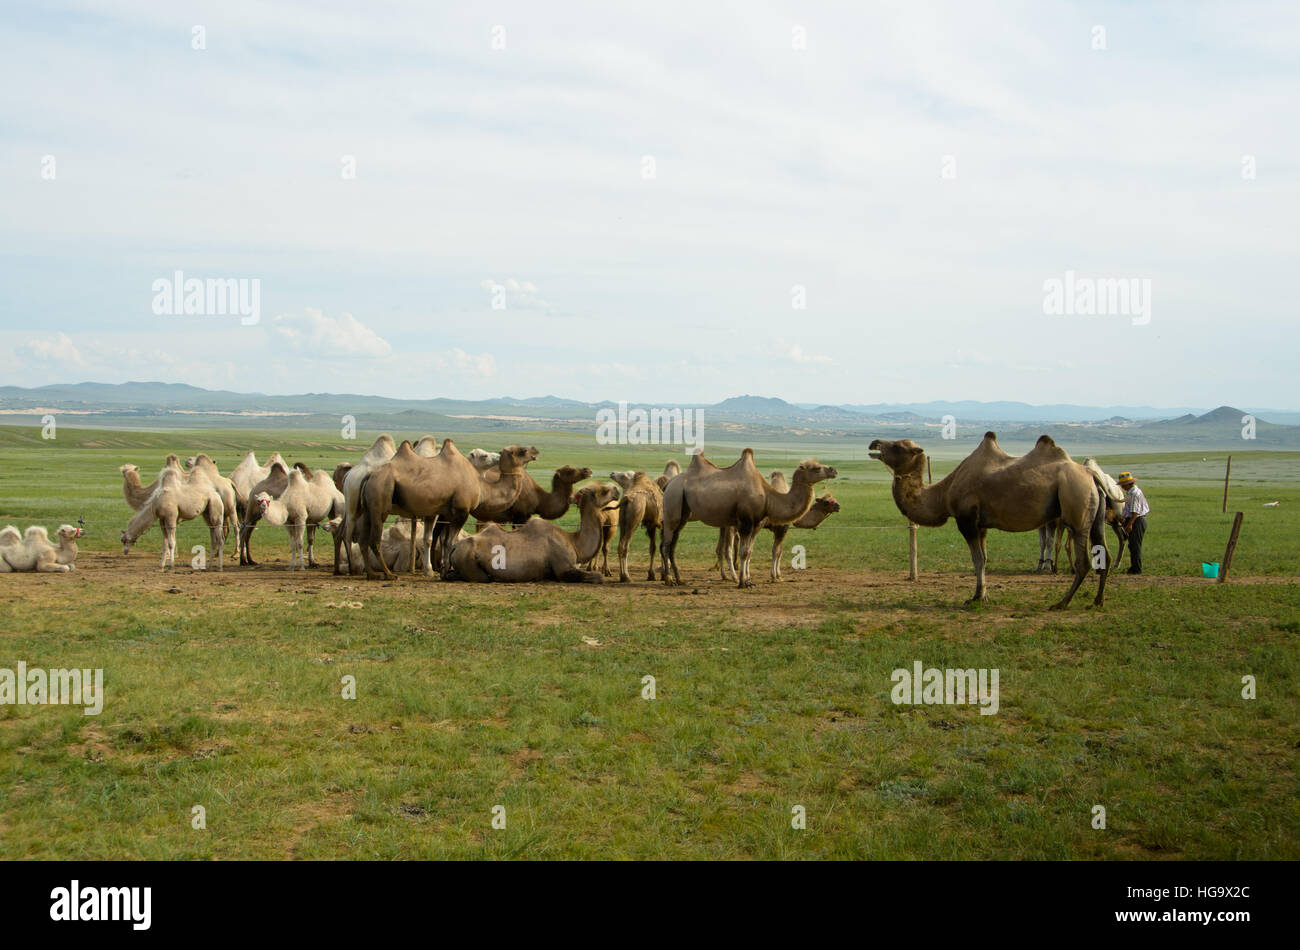 Les chameaux domestiques peut être vu dans la campagne de la Mongolie. Banque D'Images